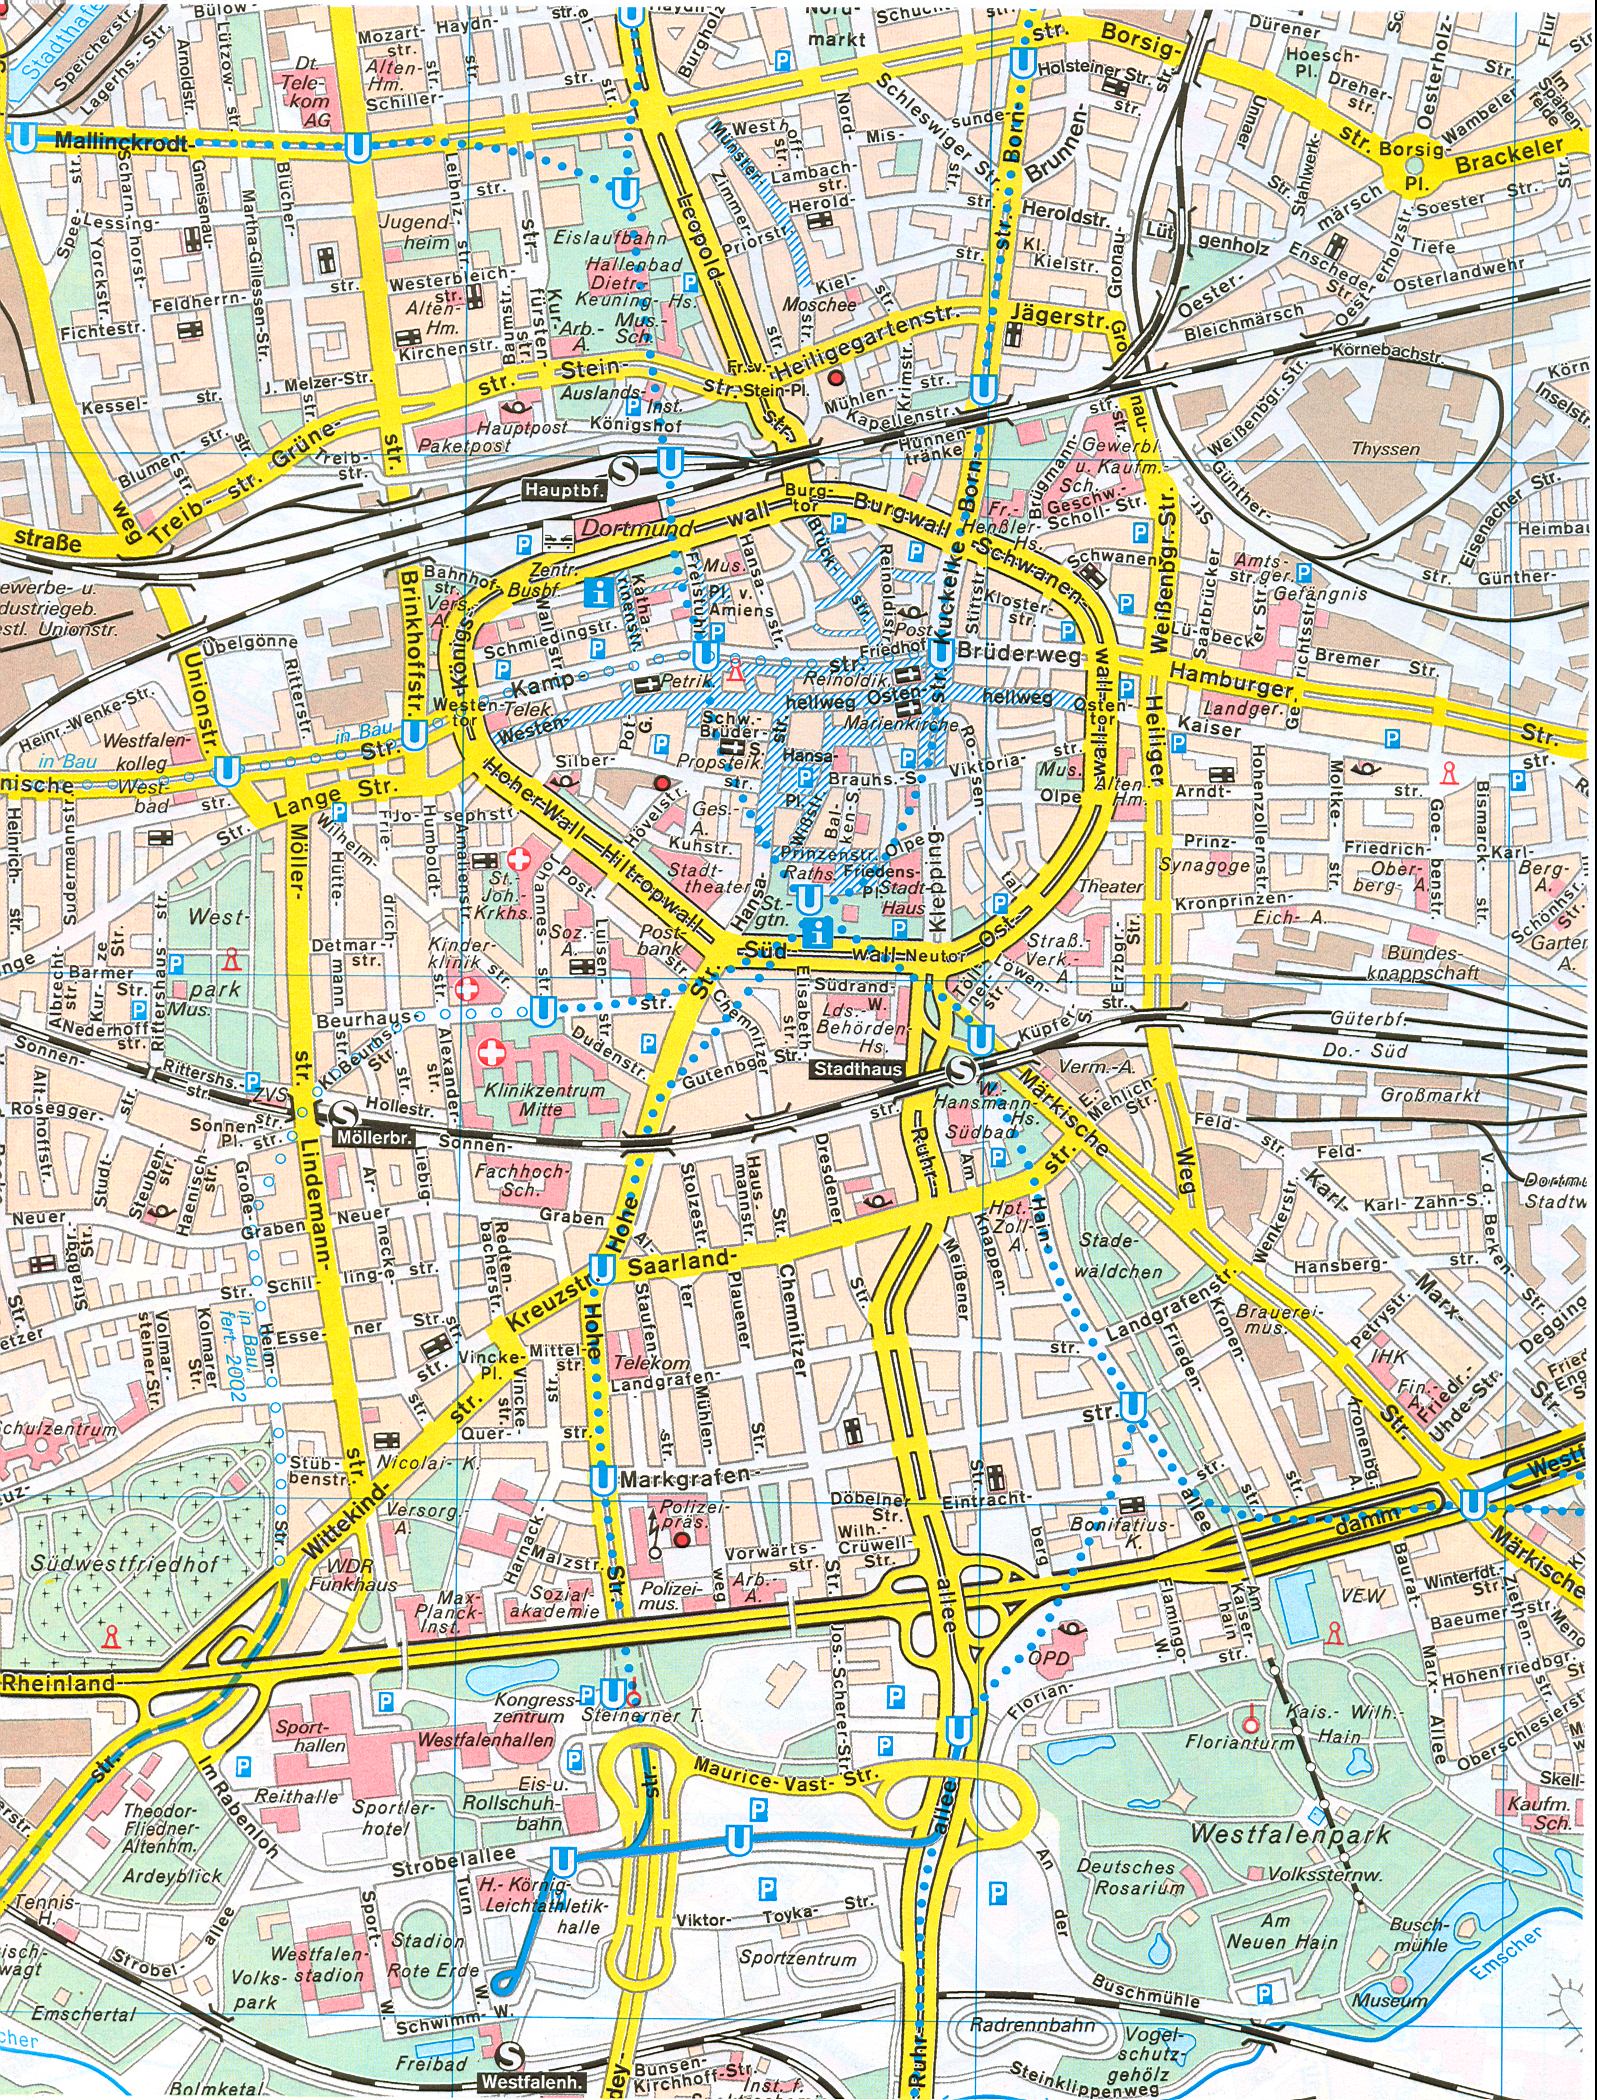 Германия. Дортмунд - подробный план города Дортмунда масштаба 1см:150м. Скачать бесплатно карту , A0 - 